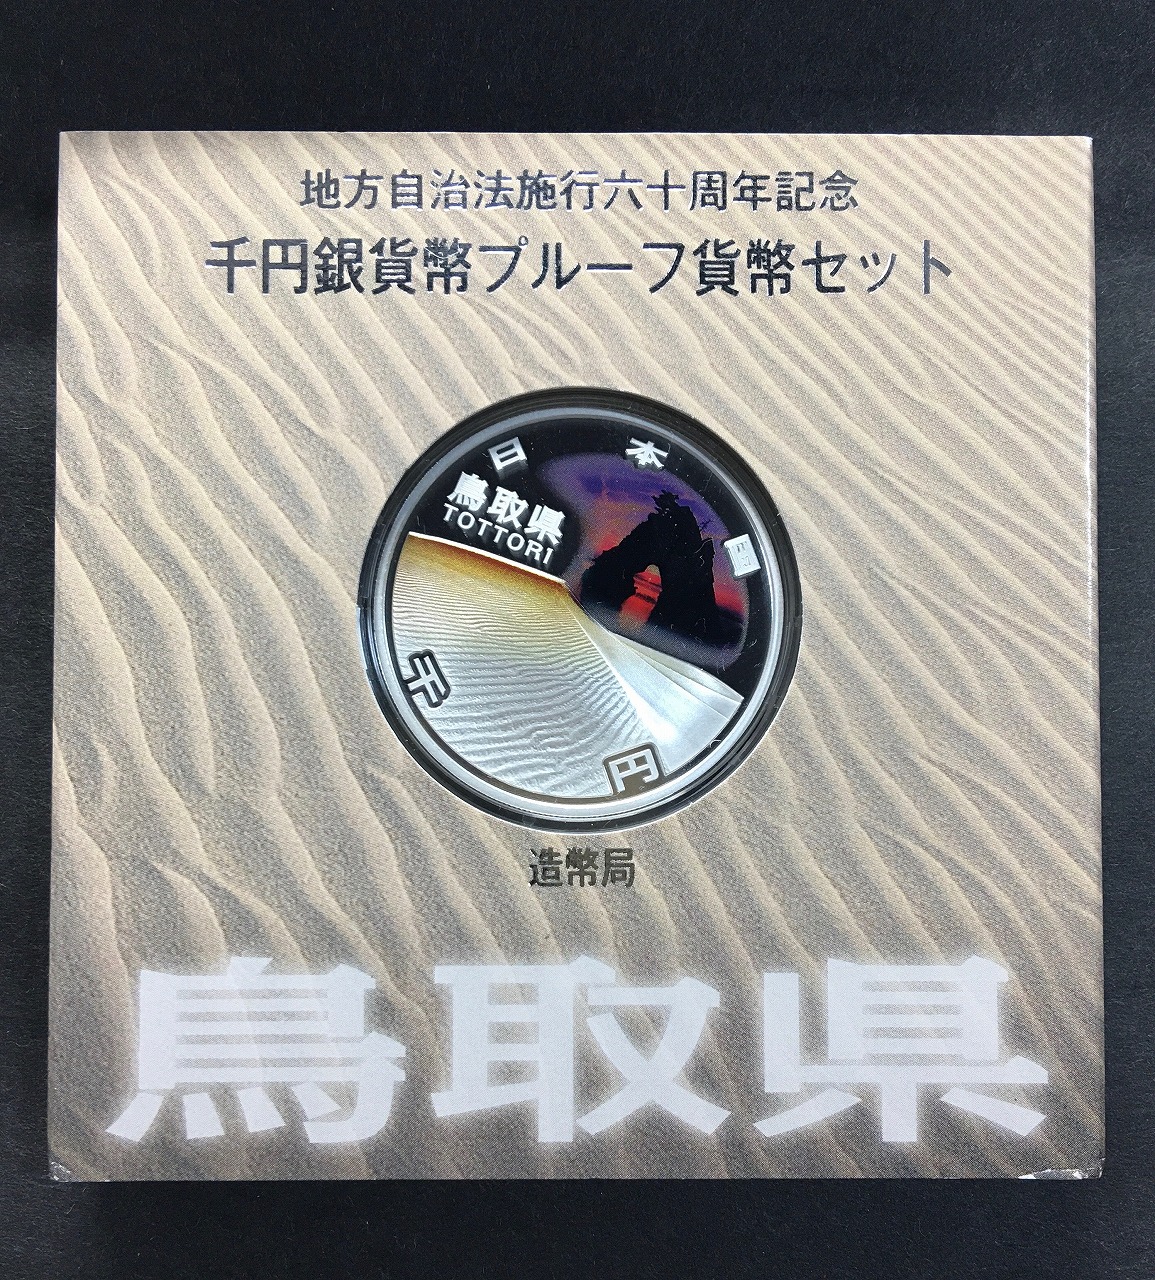 地方自治法施行60周年記念 千円銀貨プルーフ貨幣 H23 鳥取県